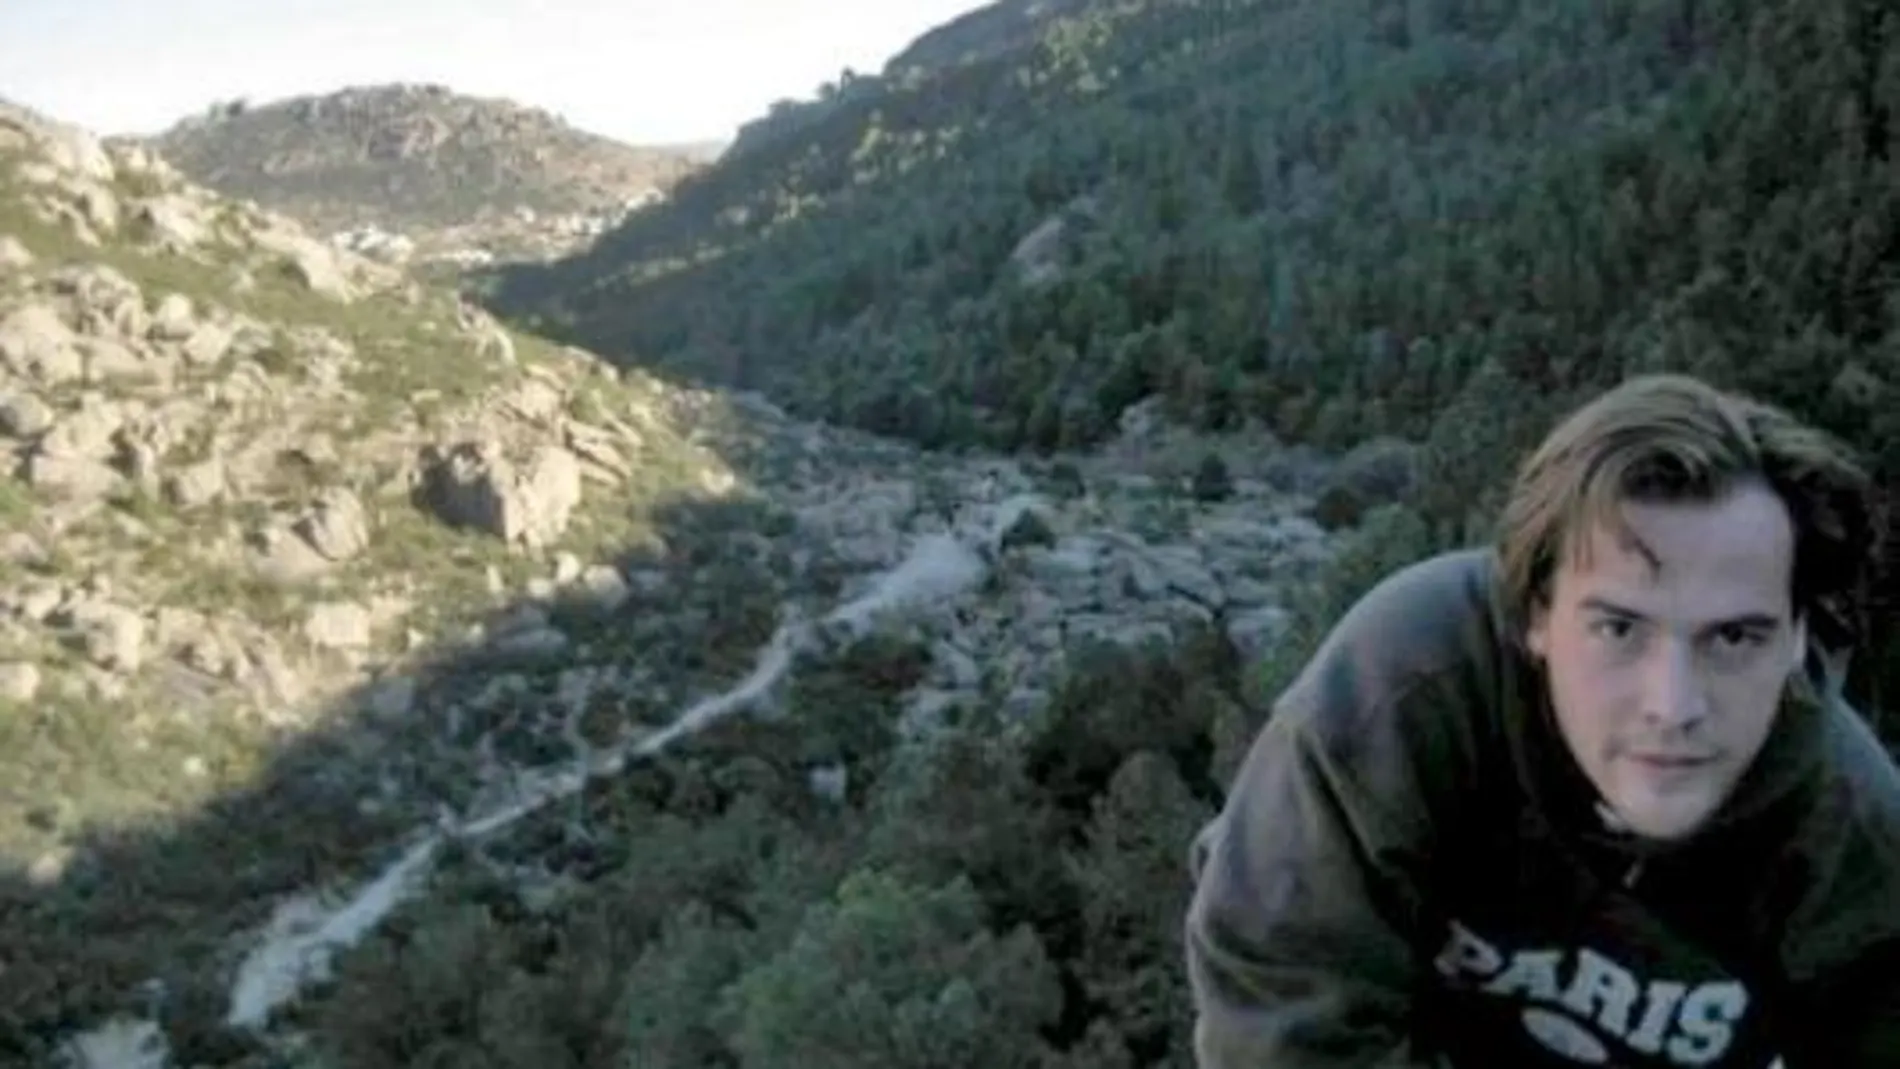 Finaliza la búsqueda del joven desaparecido en La Pedriza hace más de un año sin ninguna pista